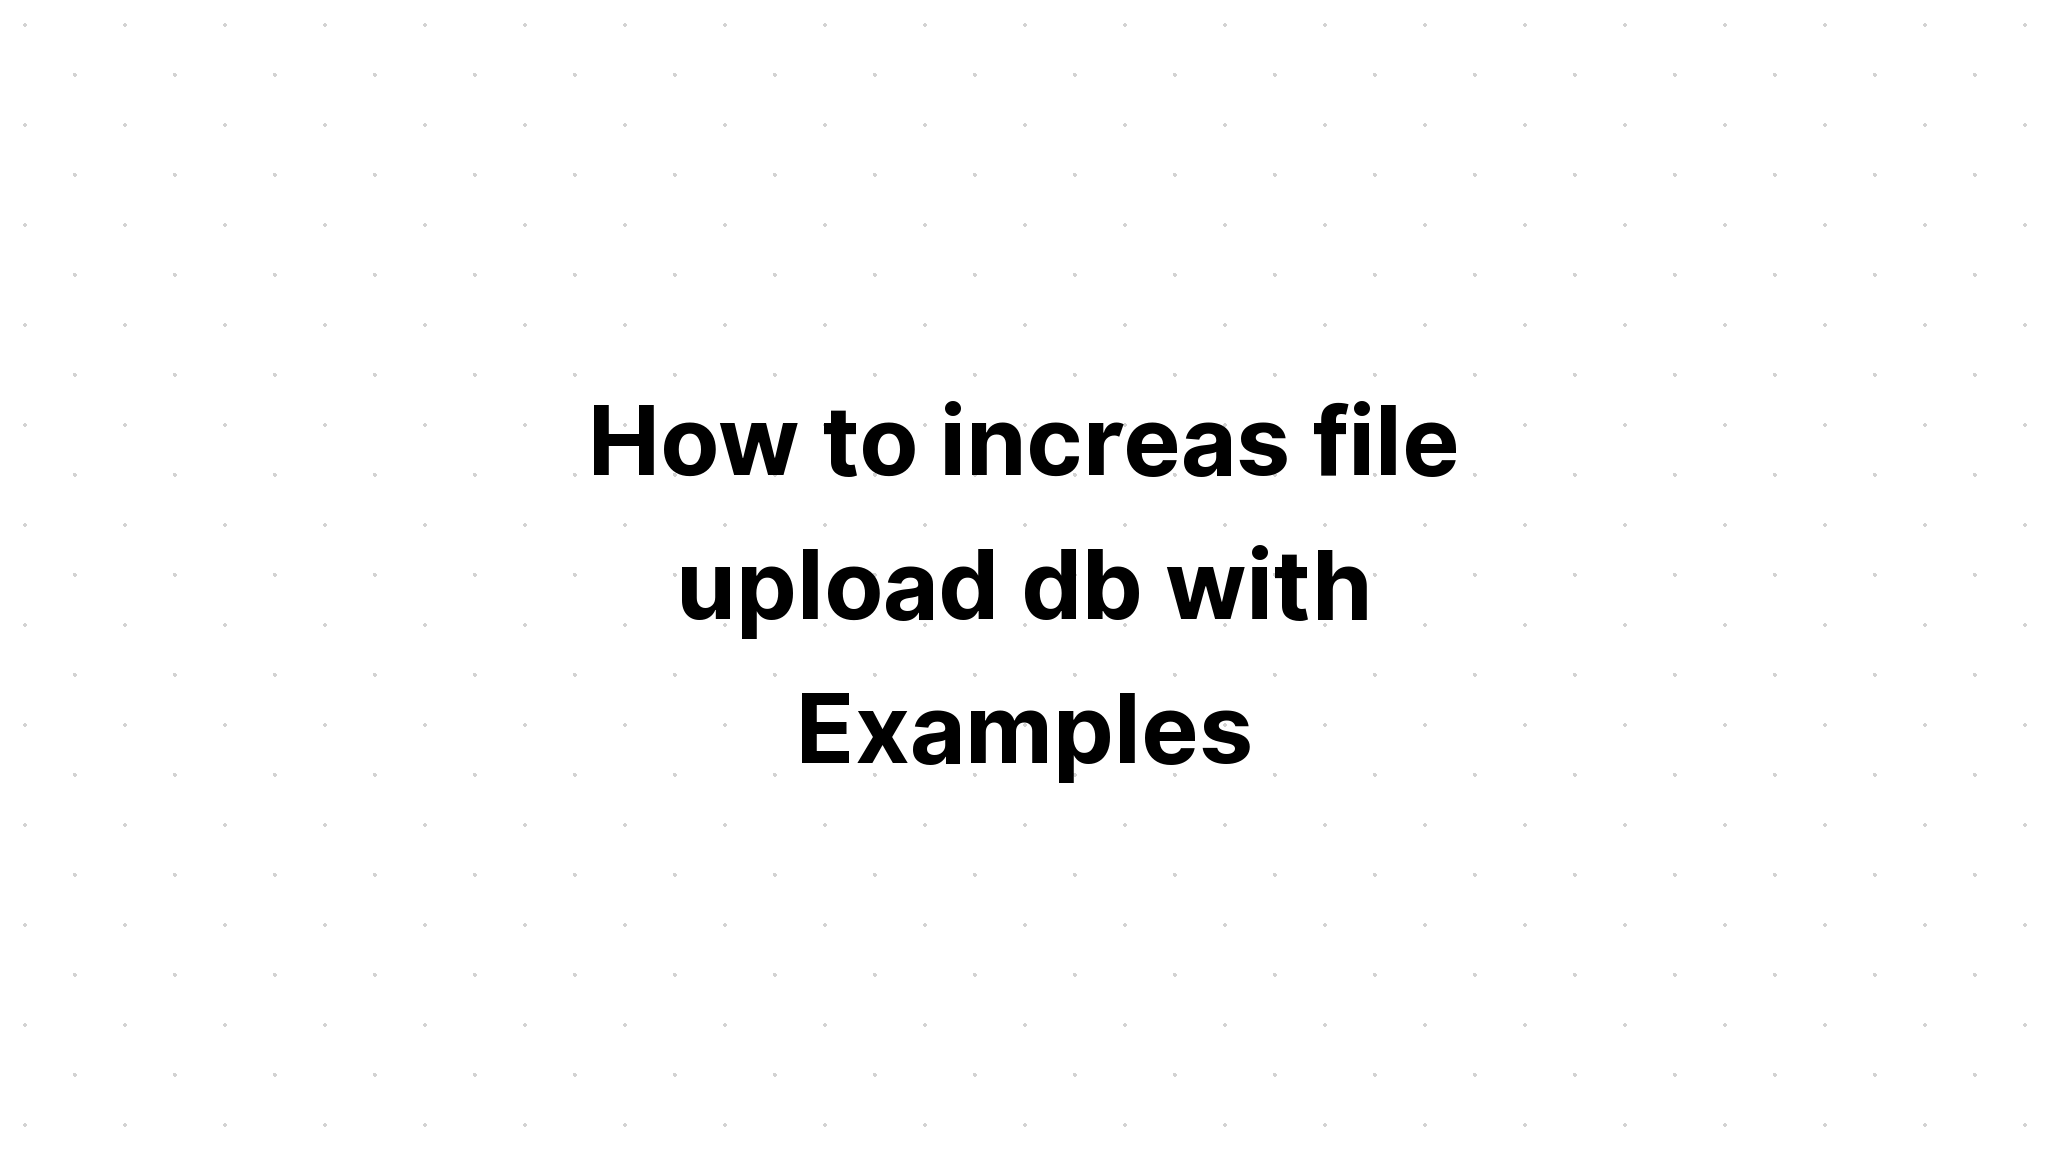 Cách tăng db tải lên tệp với các ví dụ